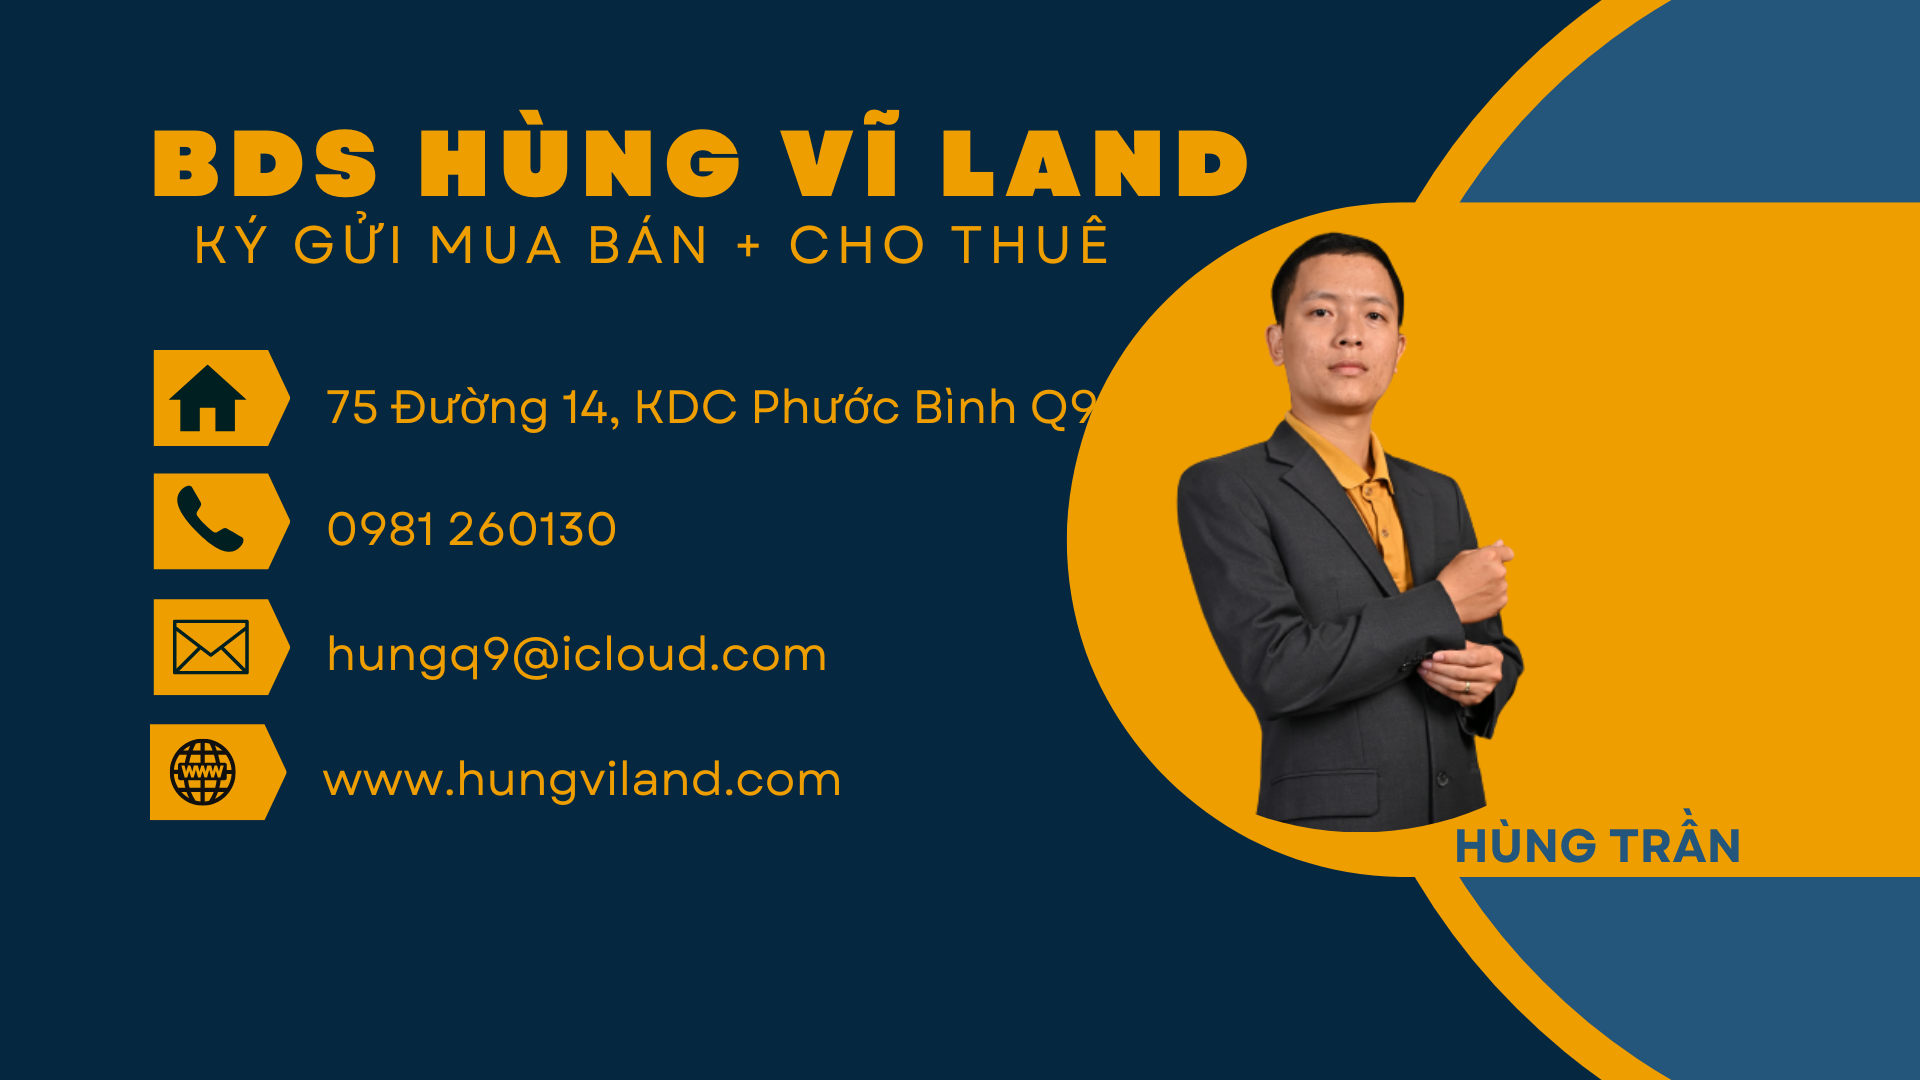 BDS HVL Kèo Thơm ! 1.75ha đất View Sông Long Thuận 150 triệu /tháng 2